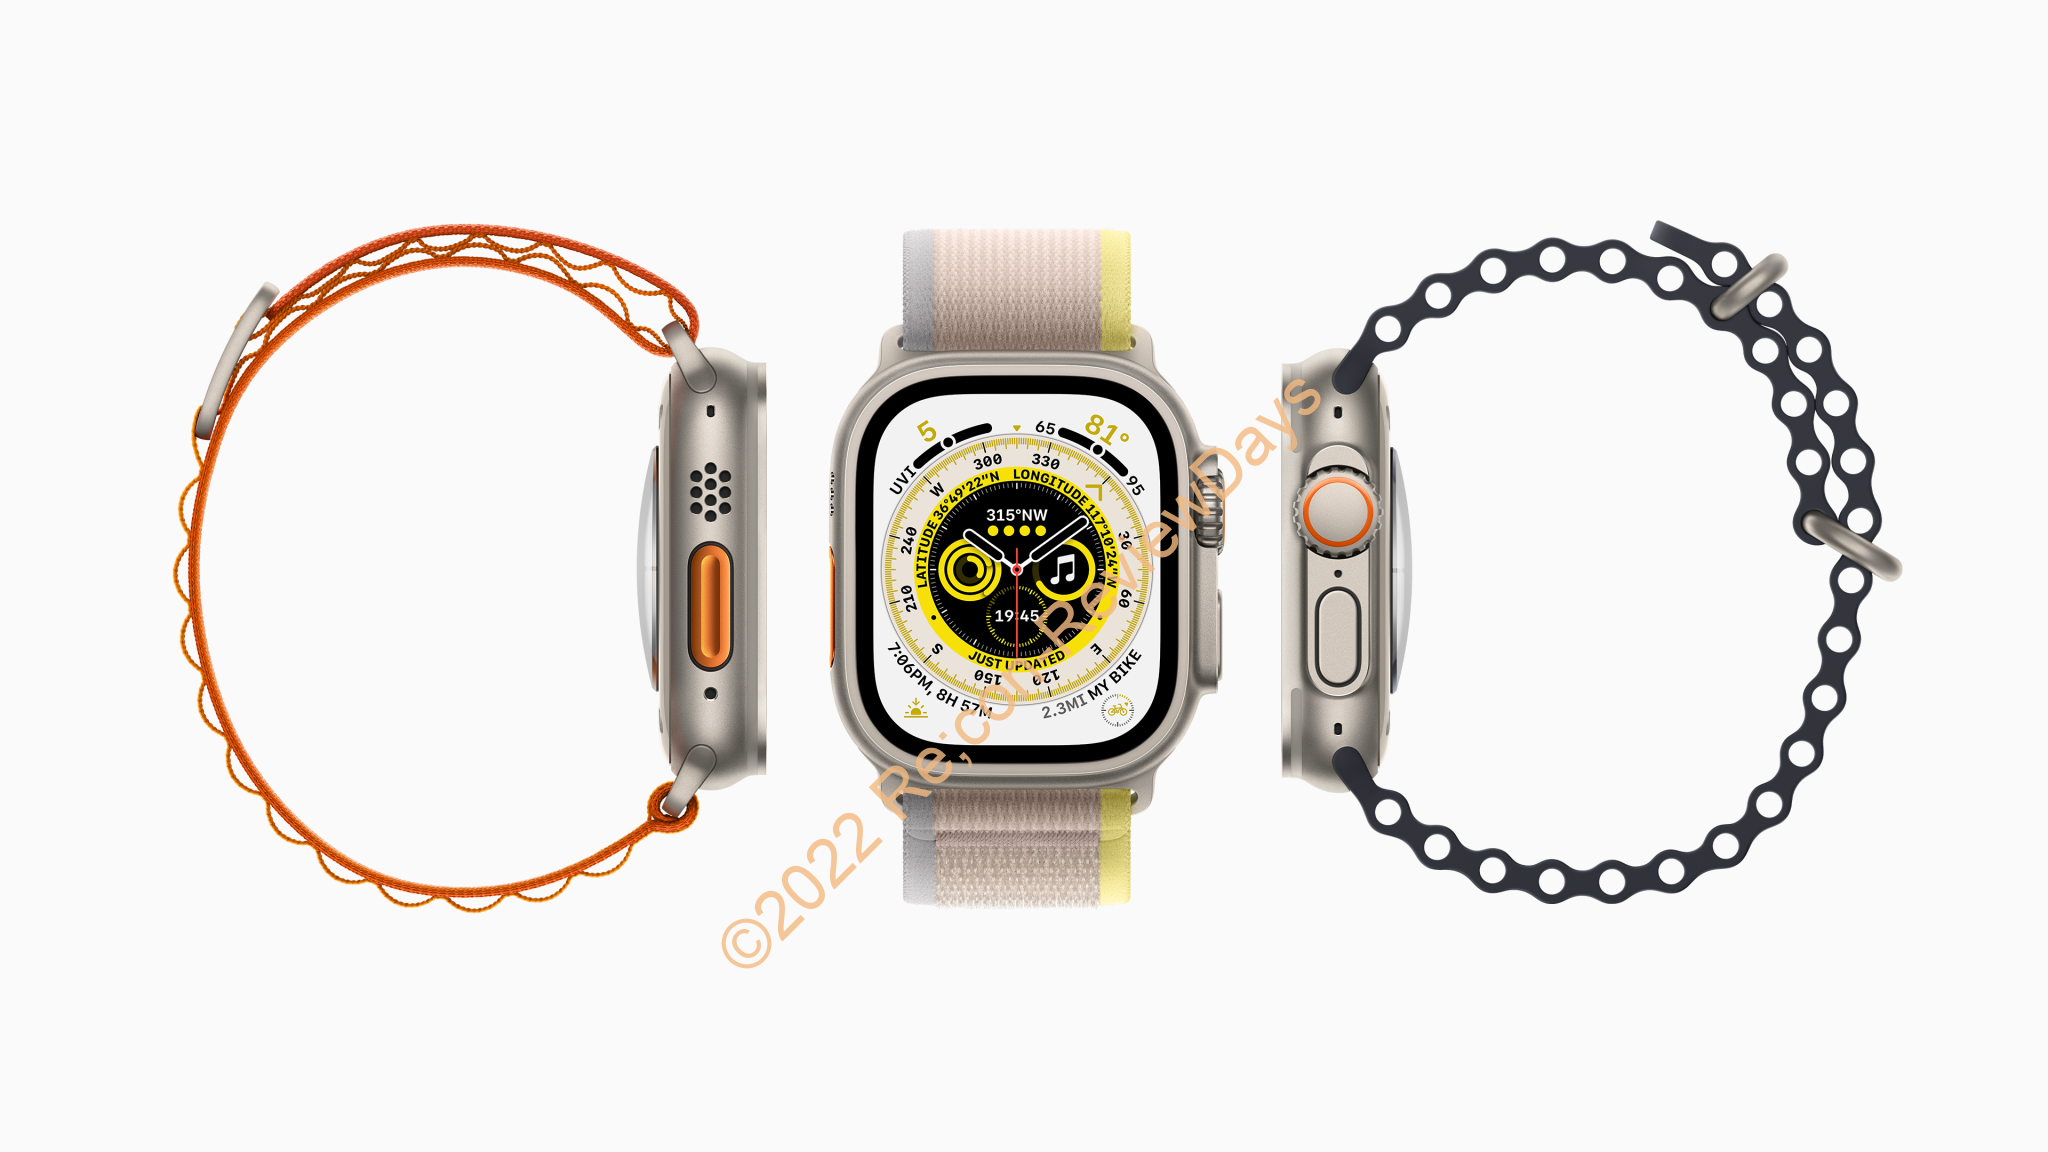 Apple Watch Ultraを予約購入しました #Apple #AppleWatch #AppleWatchUltra